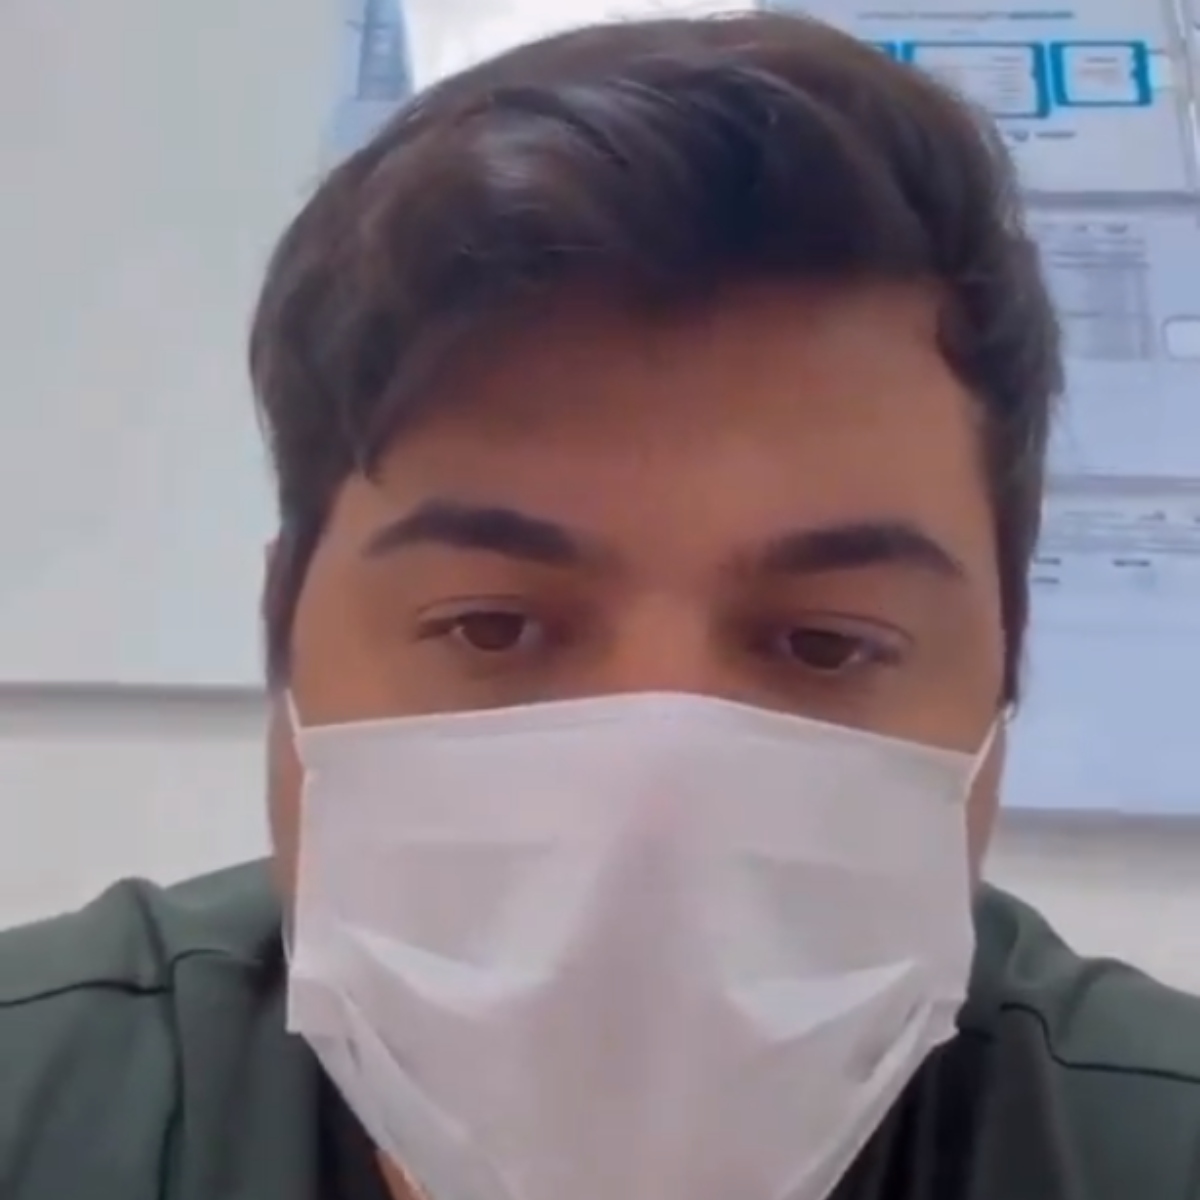  Cristiano, dupla de Zé Neto, grava vídeo em hospital após acidente: “Está com muita dor” 